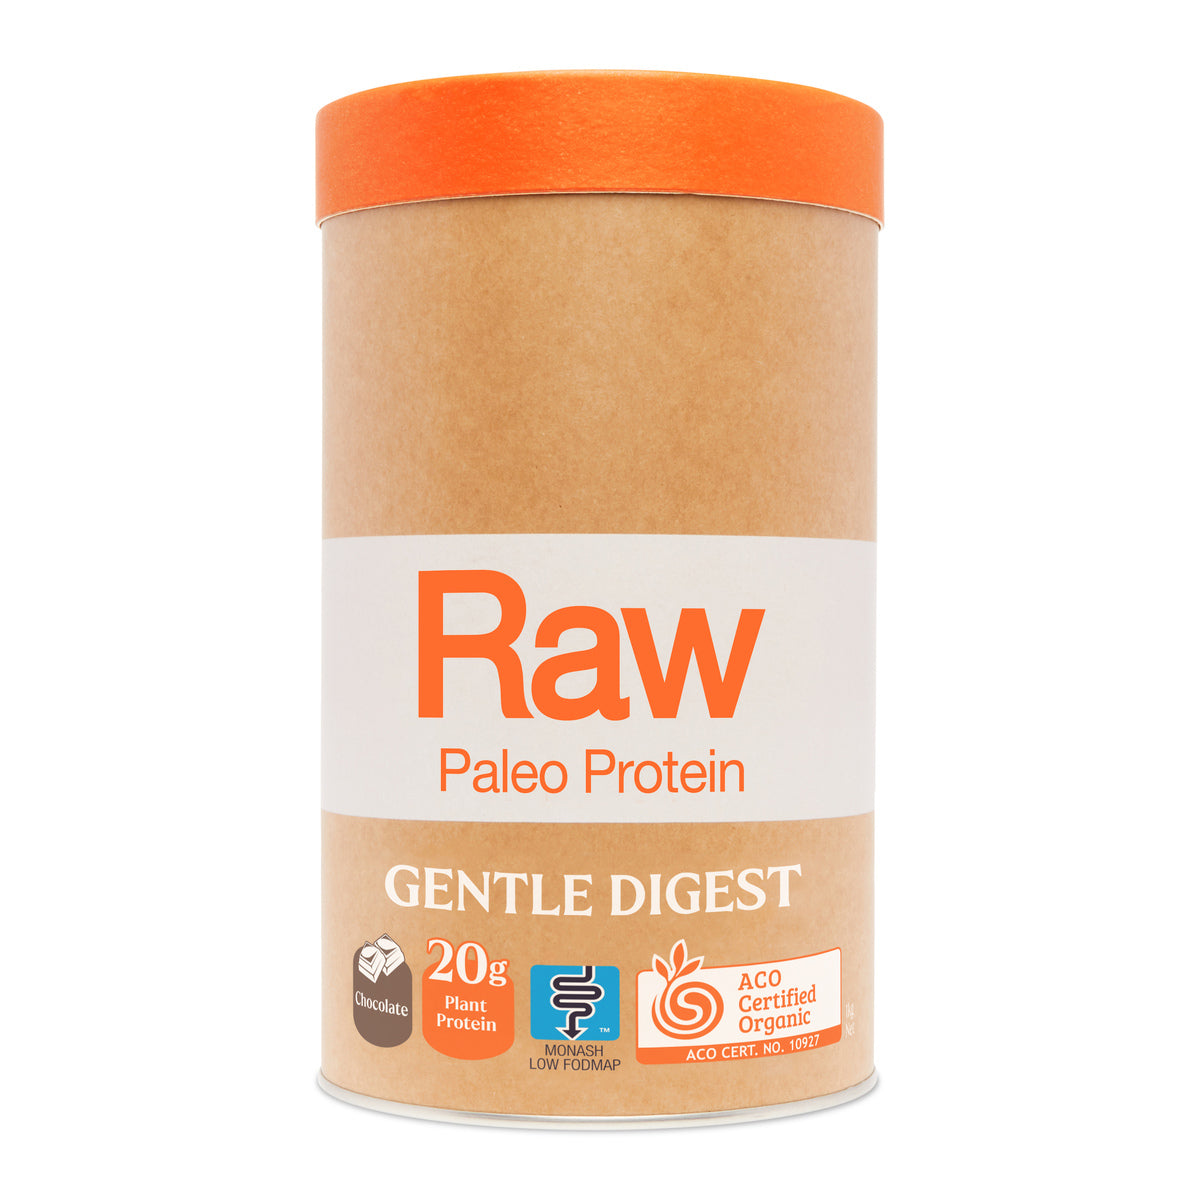 NEW Amazonia Raw Paleo Protein Gentle Digest 1kg Chocolate